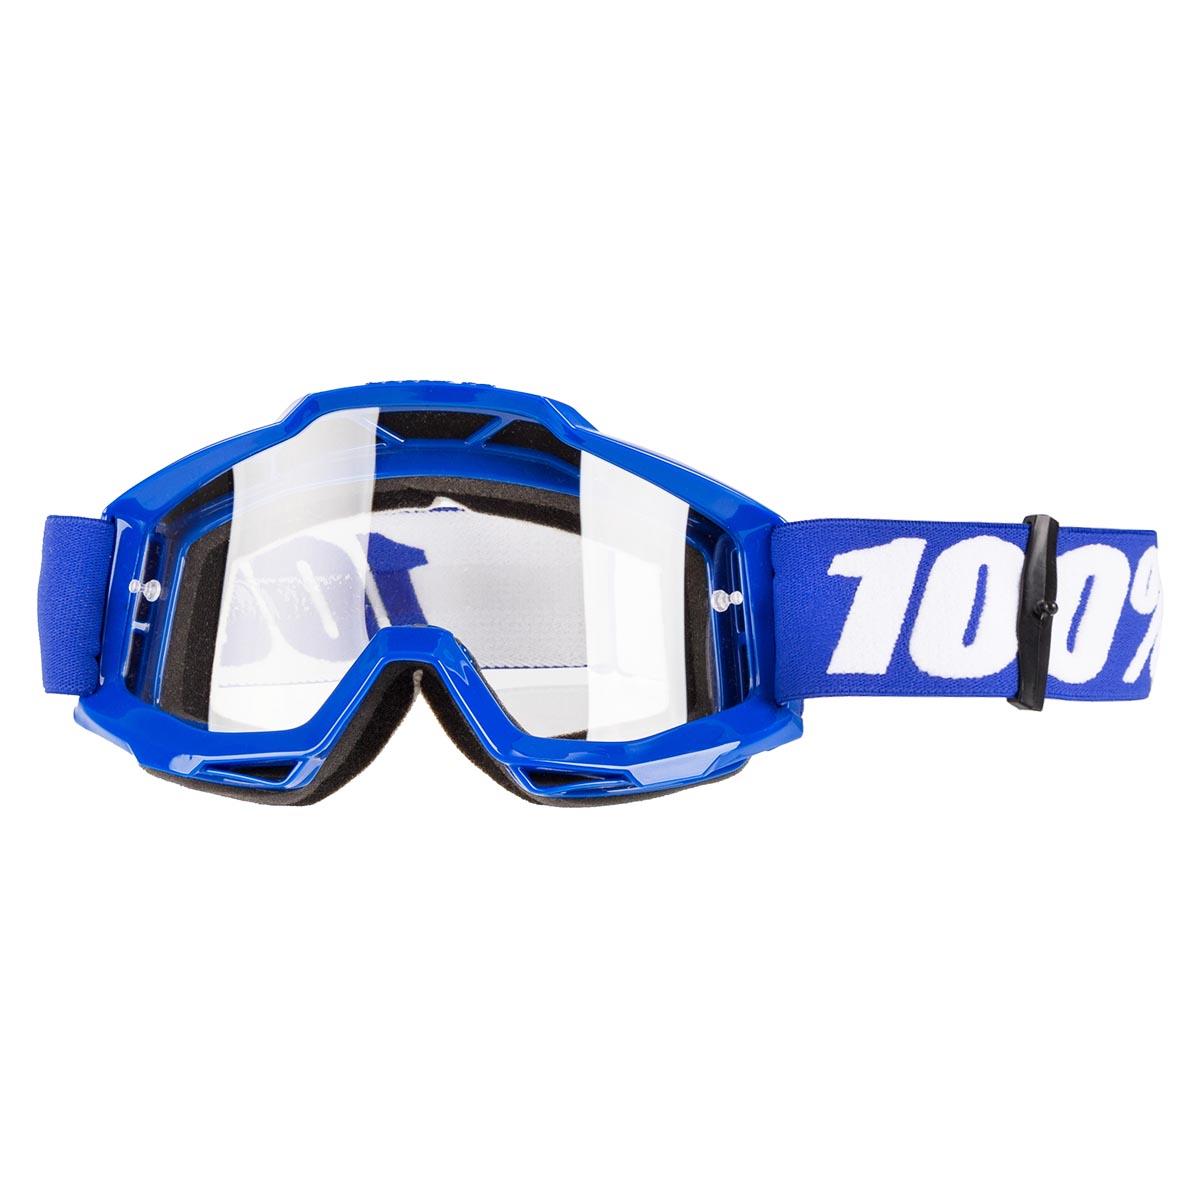 100% Goggle Accuri Reflex Blue - Clear Anti-Fog